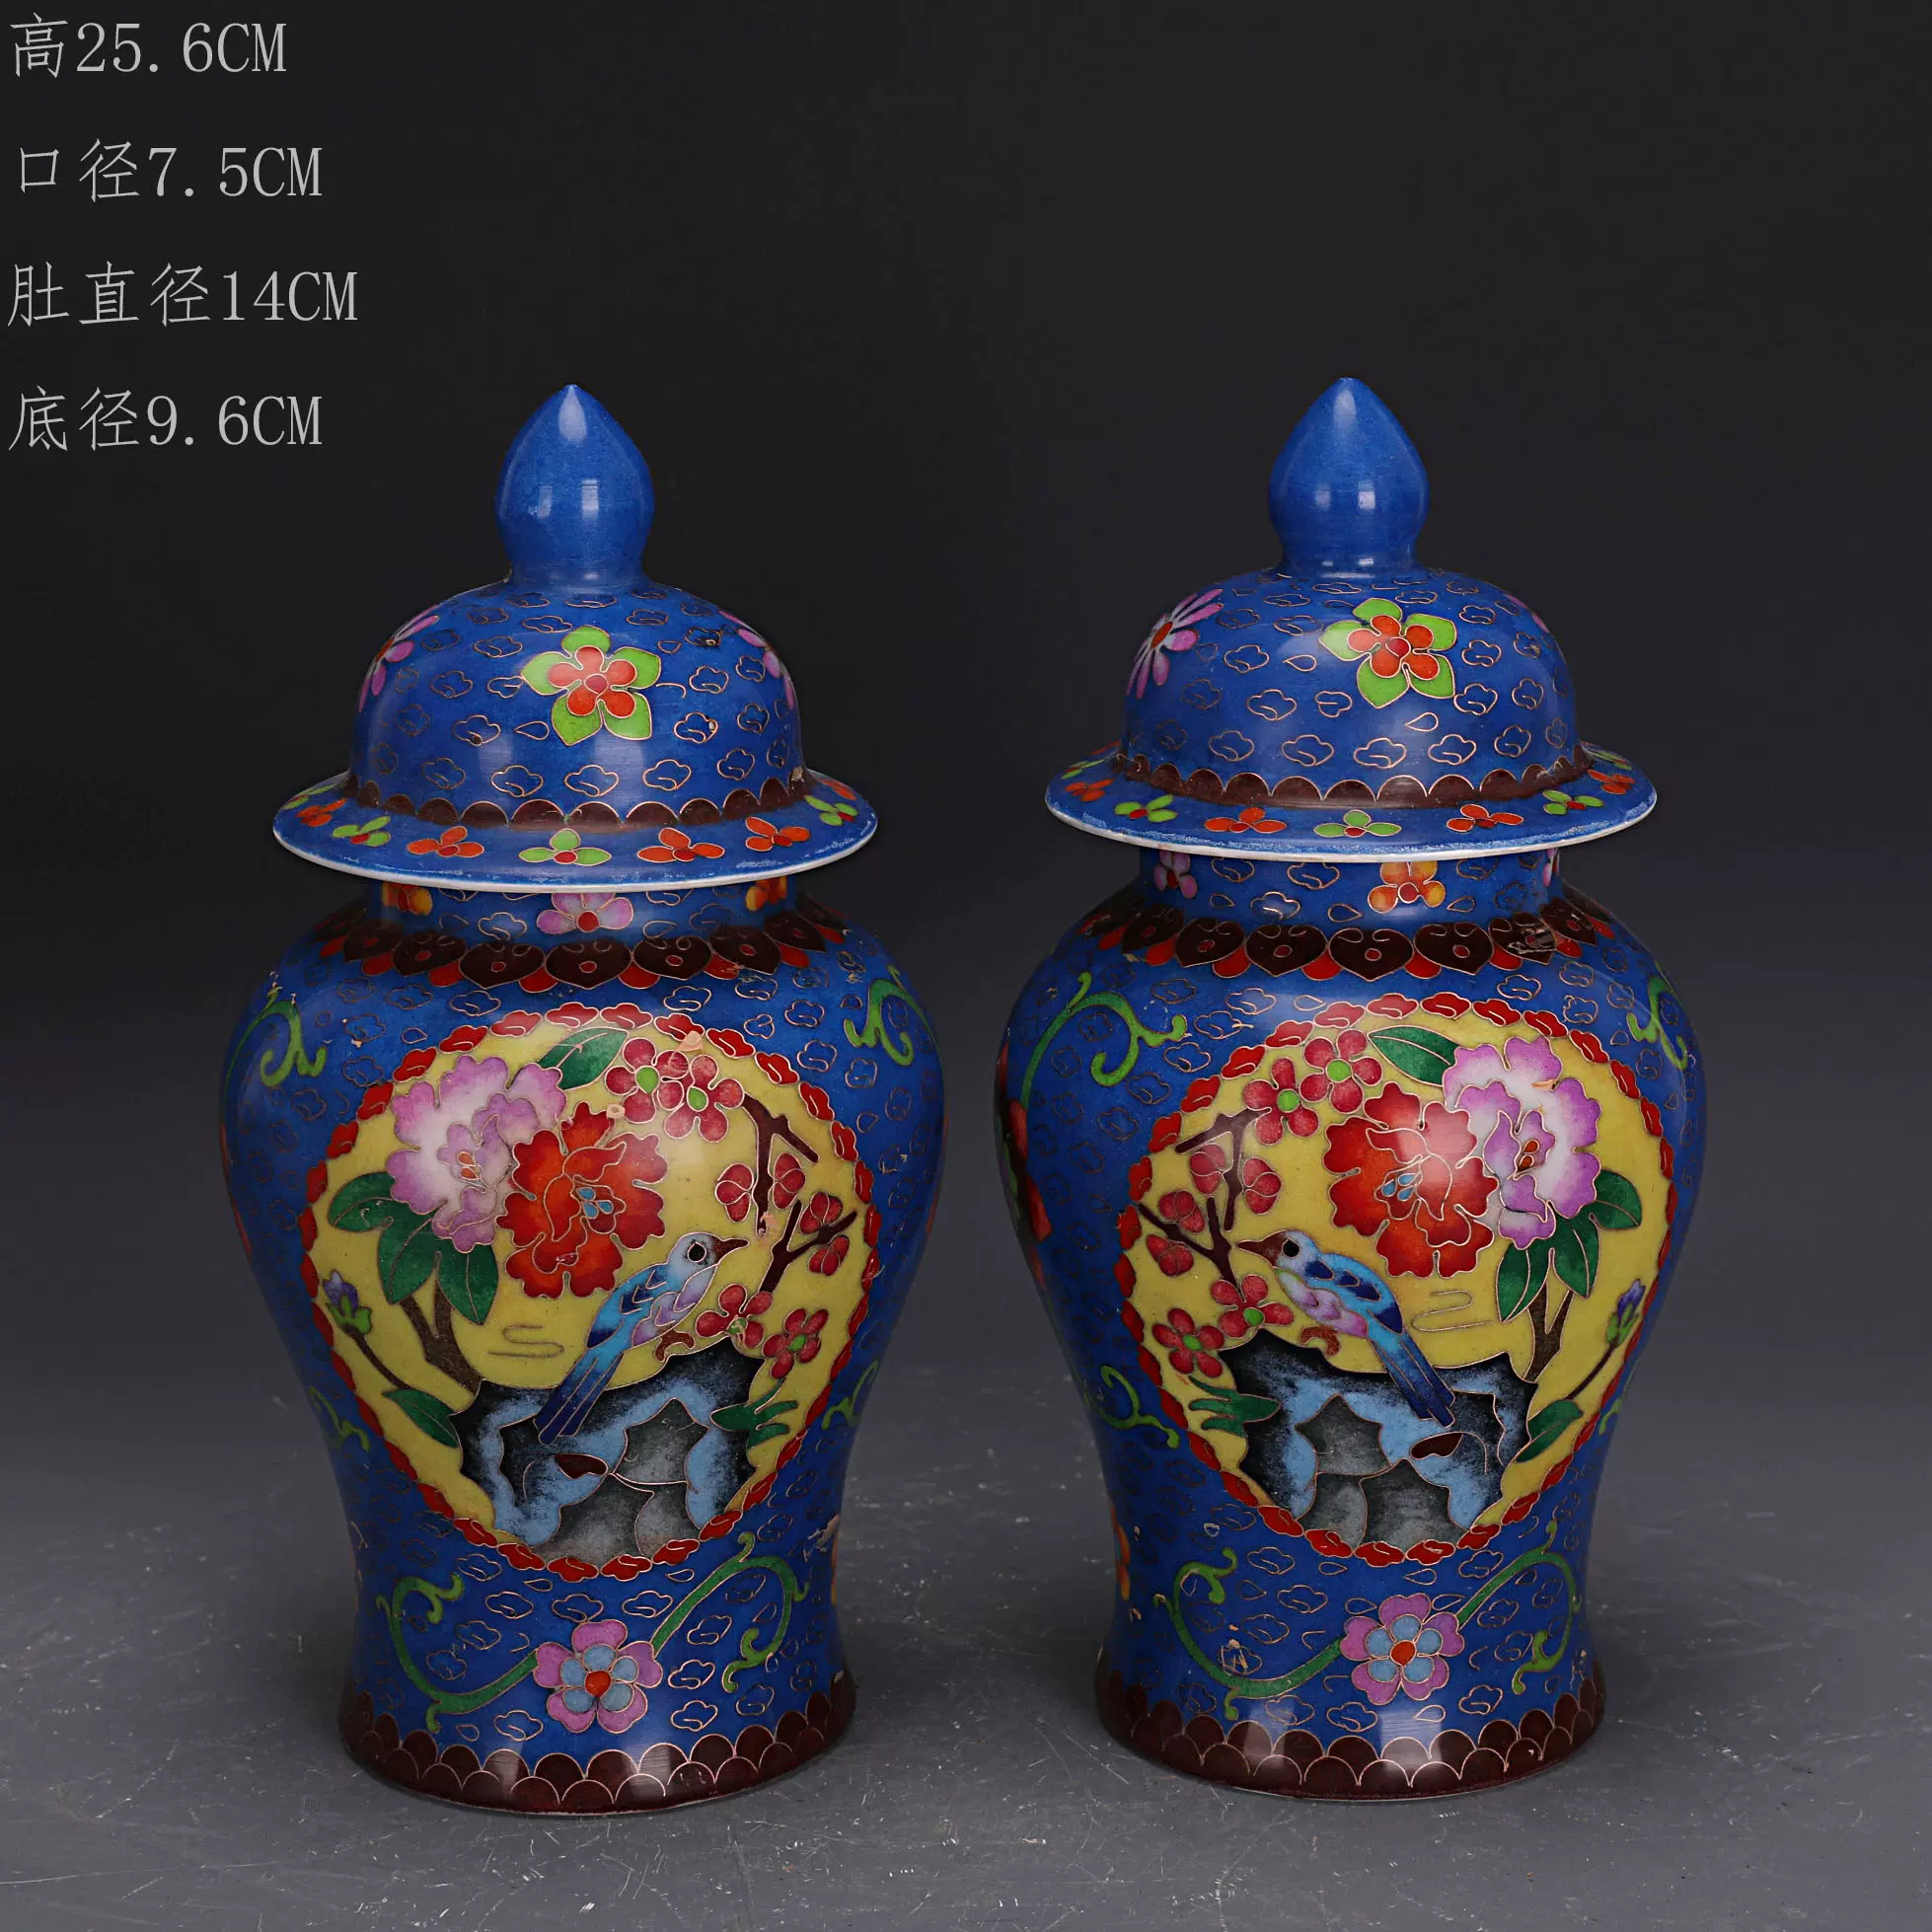 大明成化琺瑯彩掐絲花鳥紋將軍罐一對做舊官窯仿古瓷古玩收藏擺件-Taobao